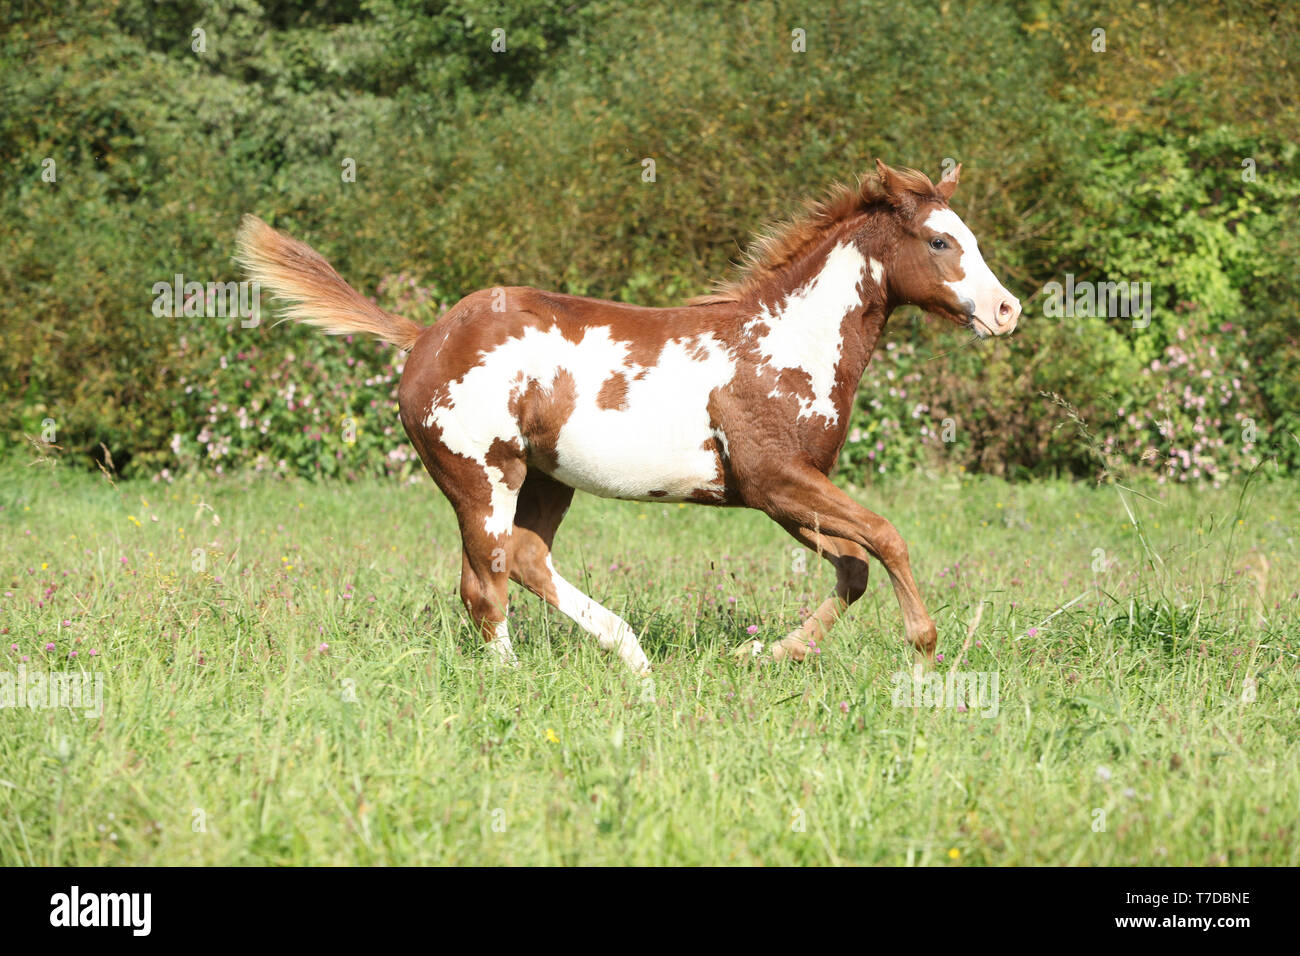 Joli poulain Paint horse tournant dans la liberté Banque D'Images